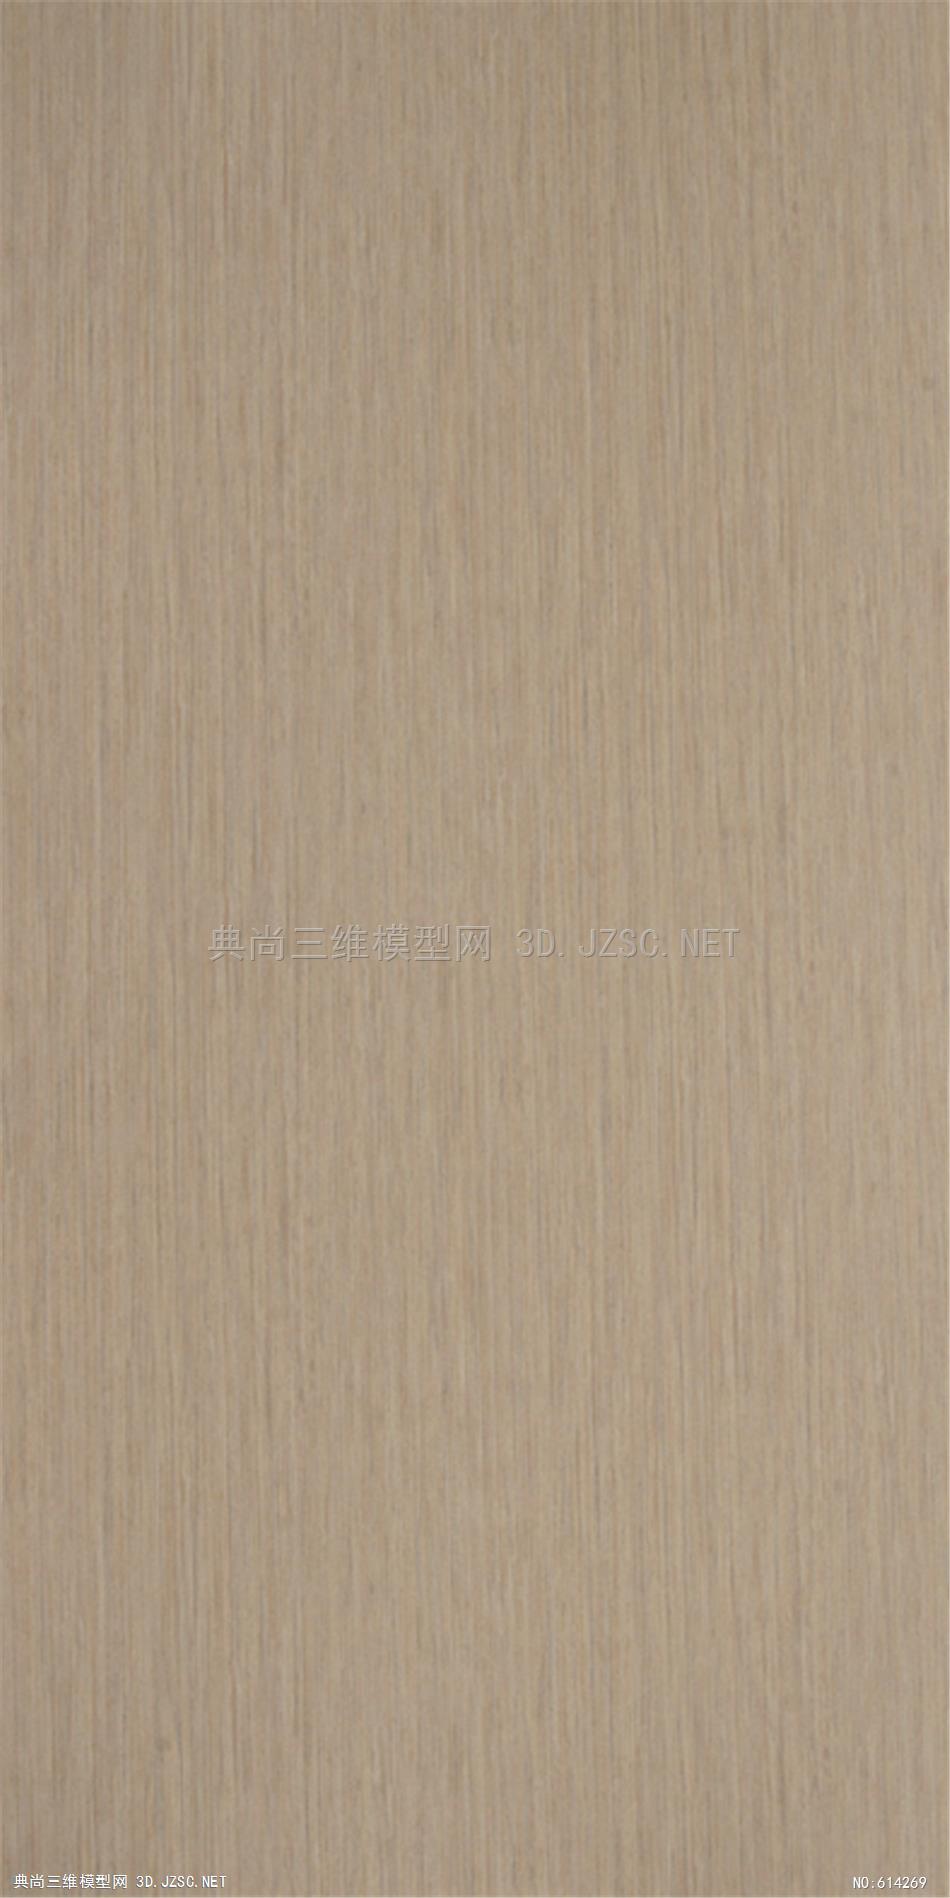 木饰面 木纹 木材  高清材质贴图 (260)